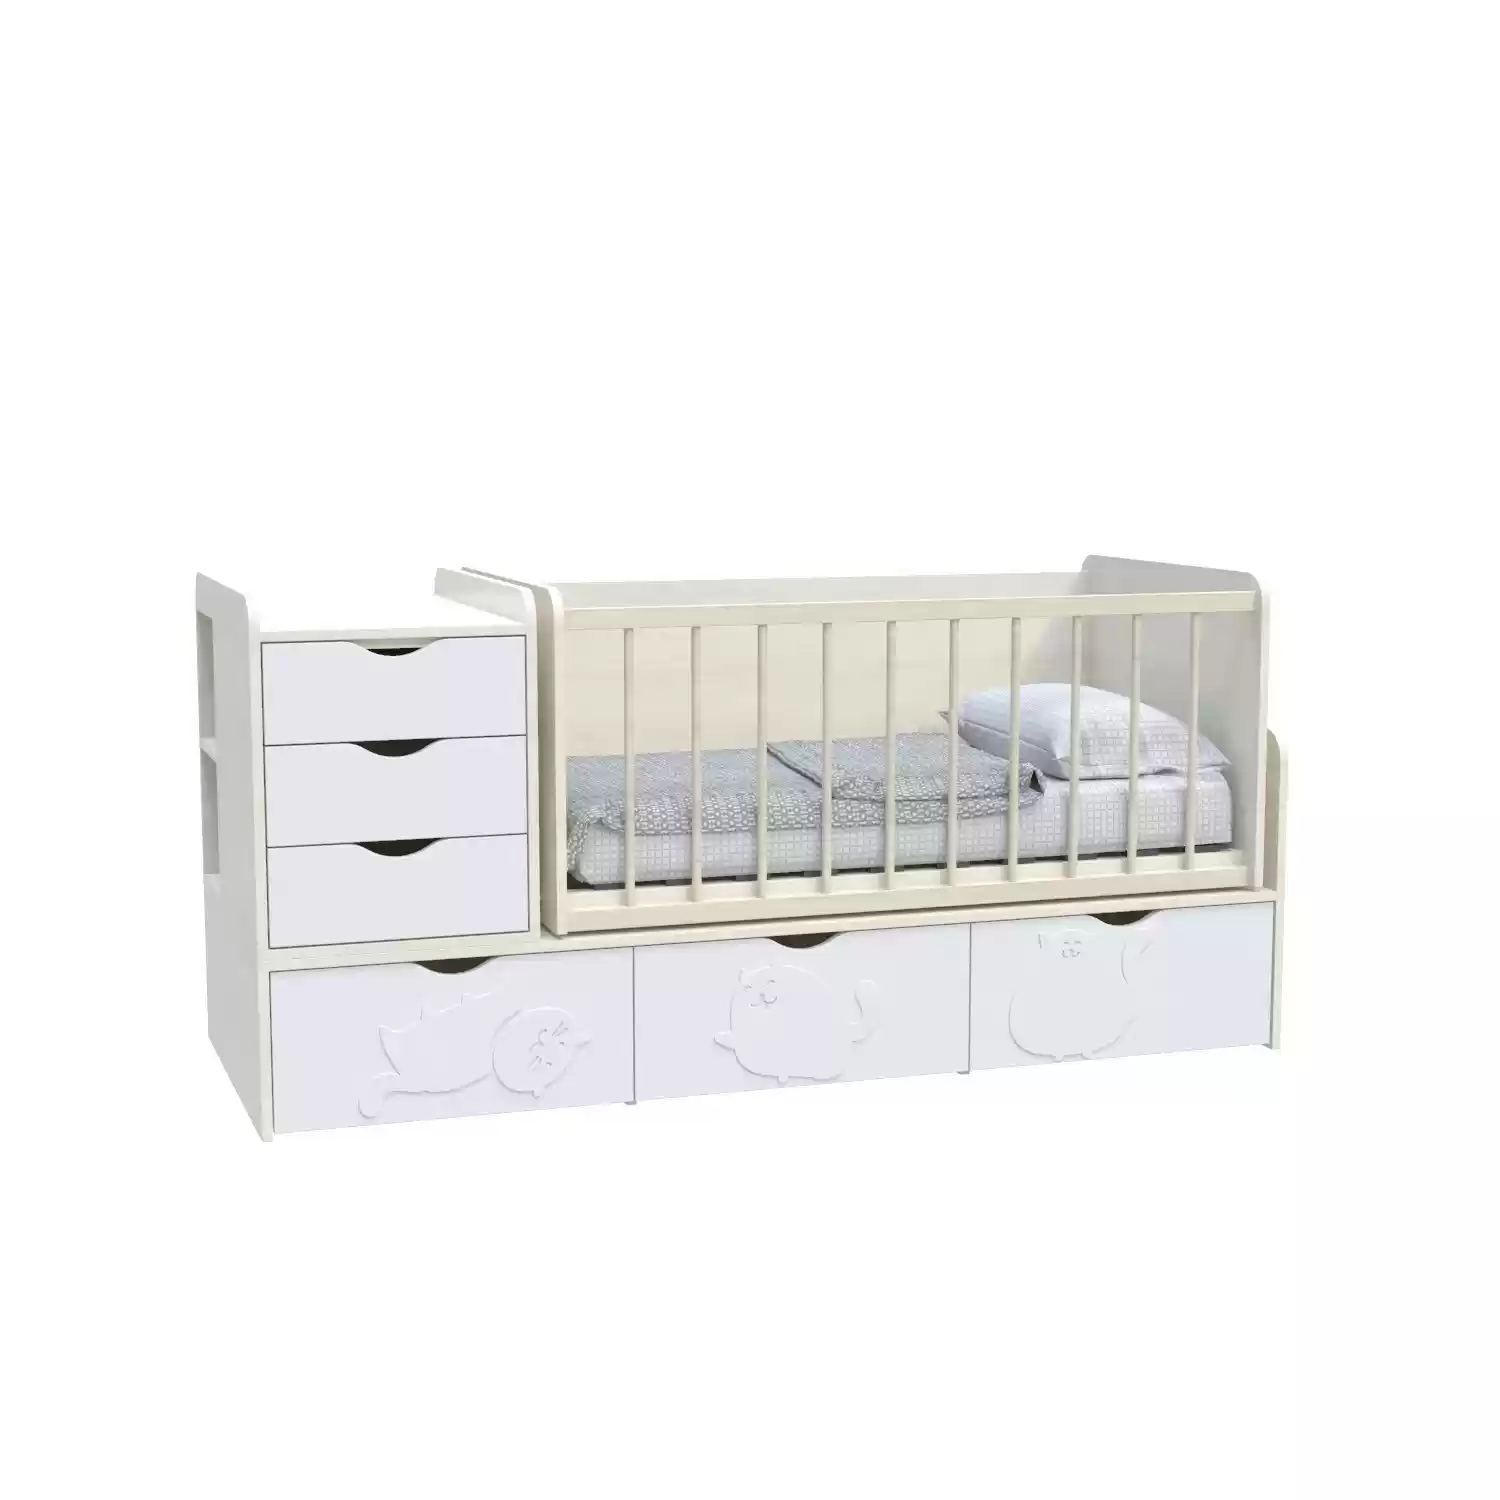 Дитяче ліжко Binky ДС504А (3 в 1) дуб шамоні/білий супермат (МДФ)